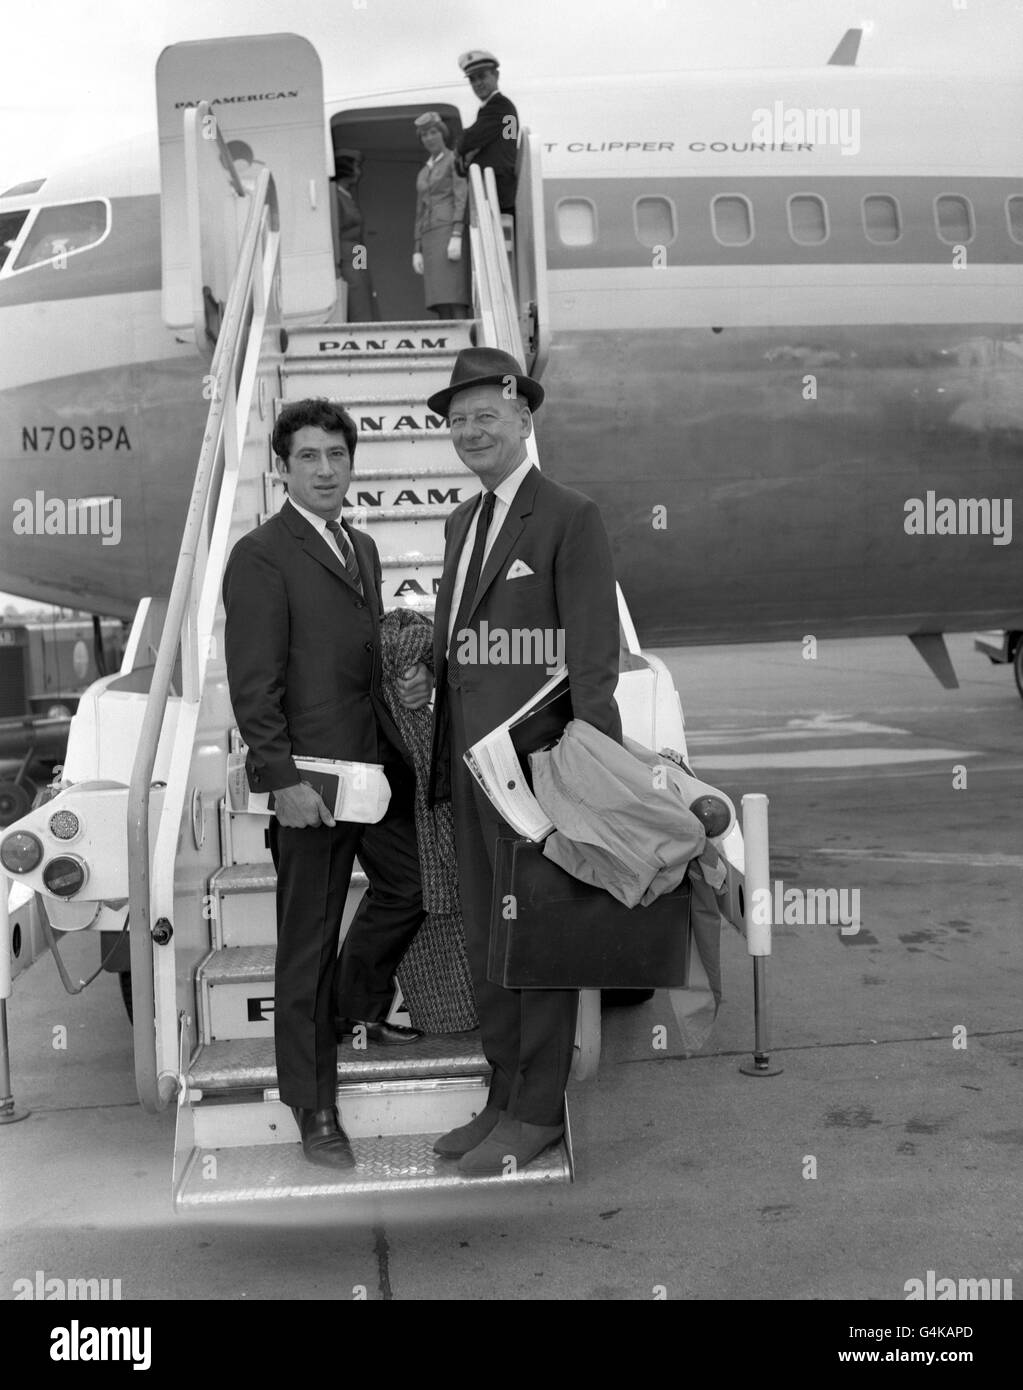 Aspetto delle celebrità - Sir John Gielgud/Alexander Grant - Aeroporto di Londra Foto Stock